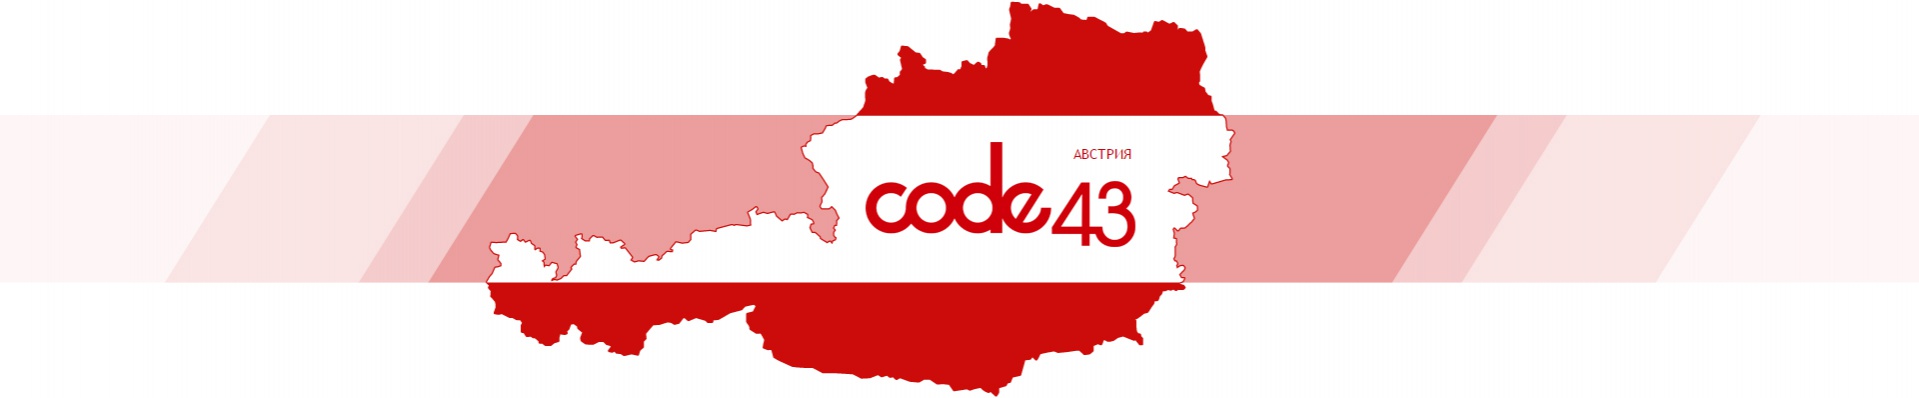 Разработка электронной версии журнала об Австрии Code43